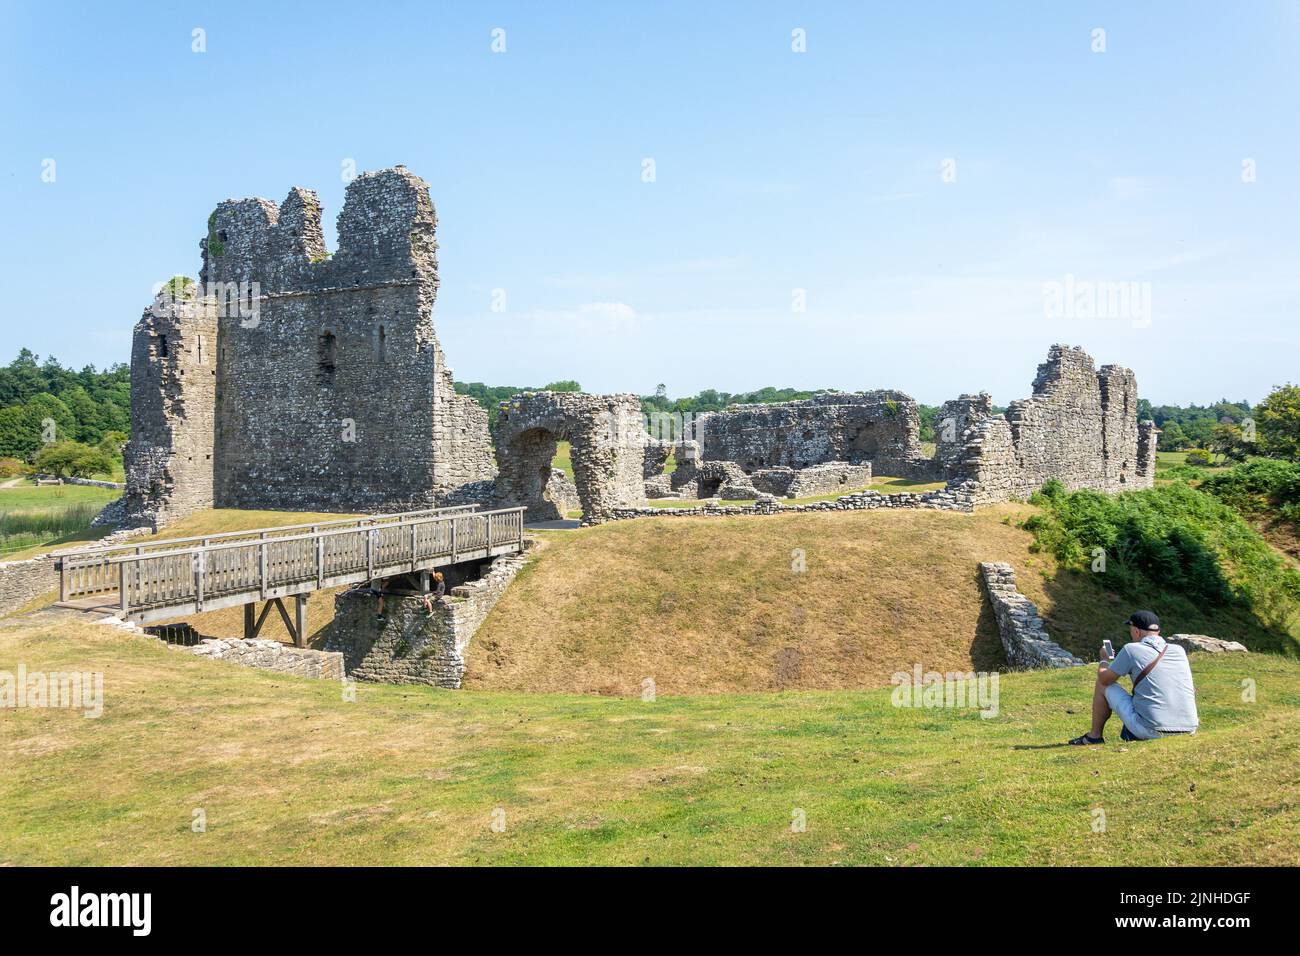 Ruinen der normannischen Steinburg, Ogmore Castle, Ogmore, Vale of Glamorgan (Bro Morgannwg), Wales (Cymru), Vereinigtes Königreich Stockfoto